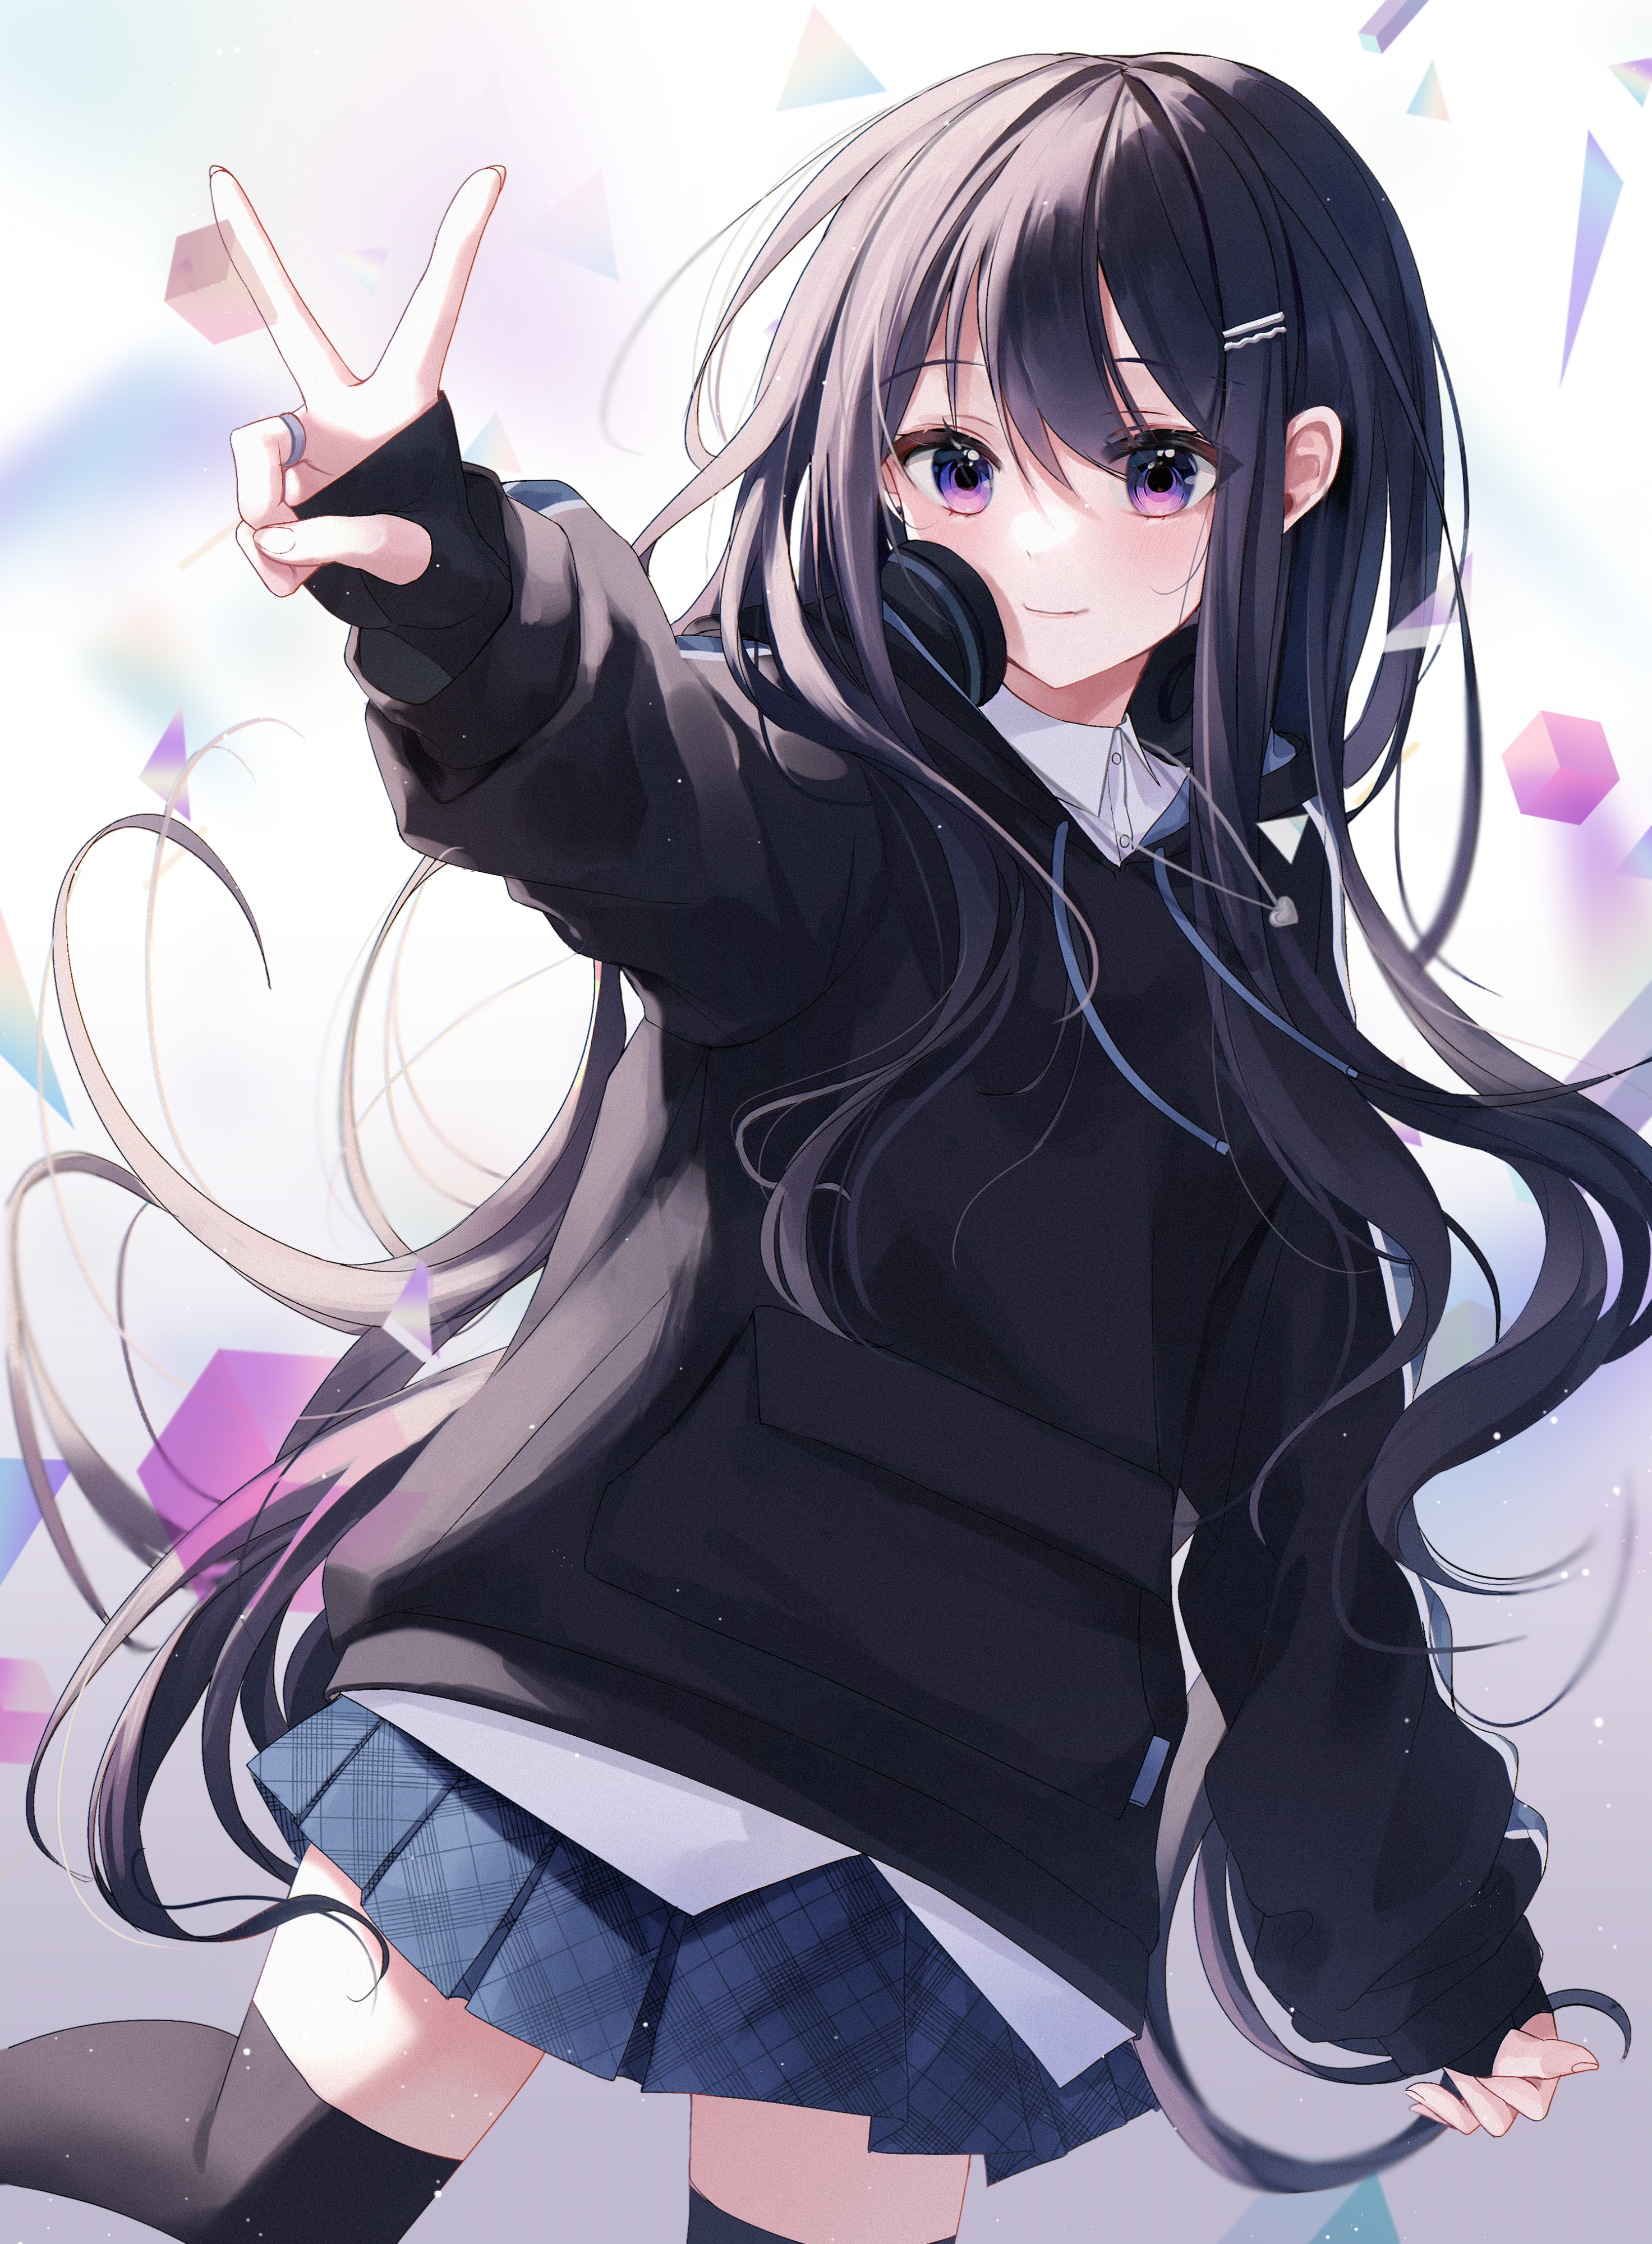 Anime 2945x4000 anime artwork anime girls peace sign headphones cube